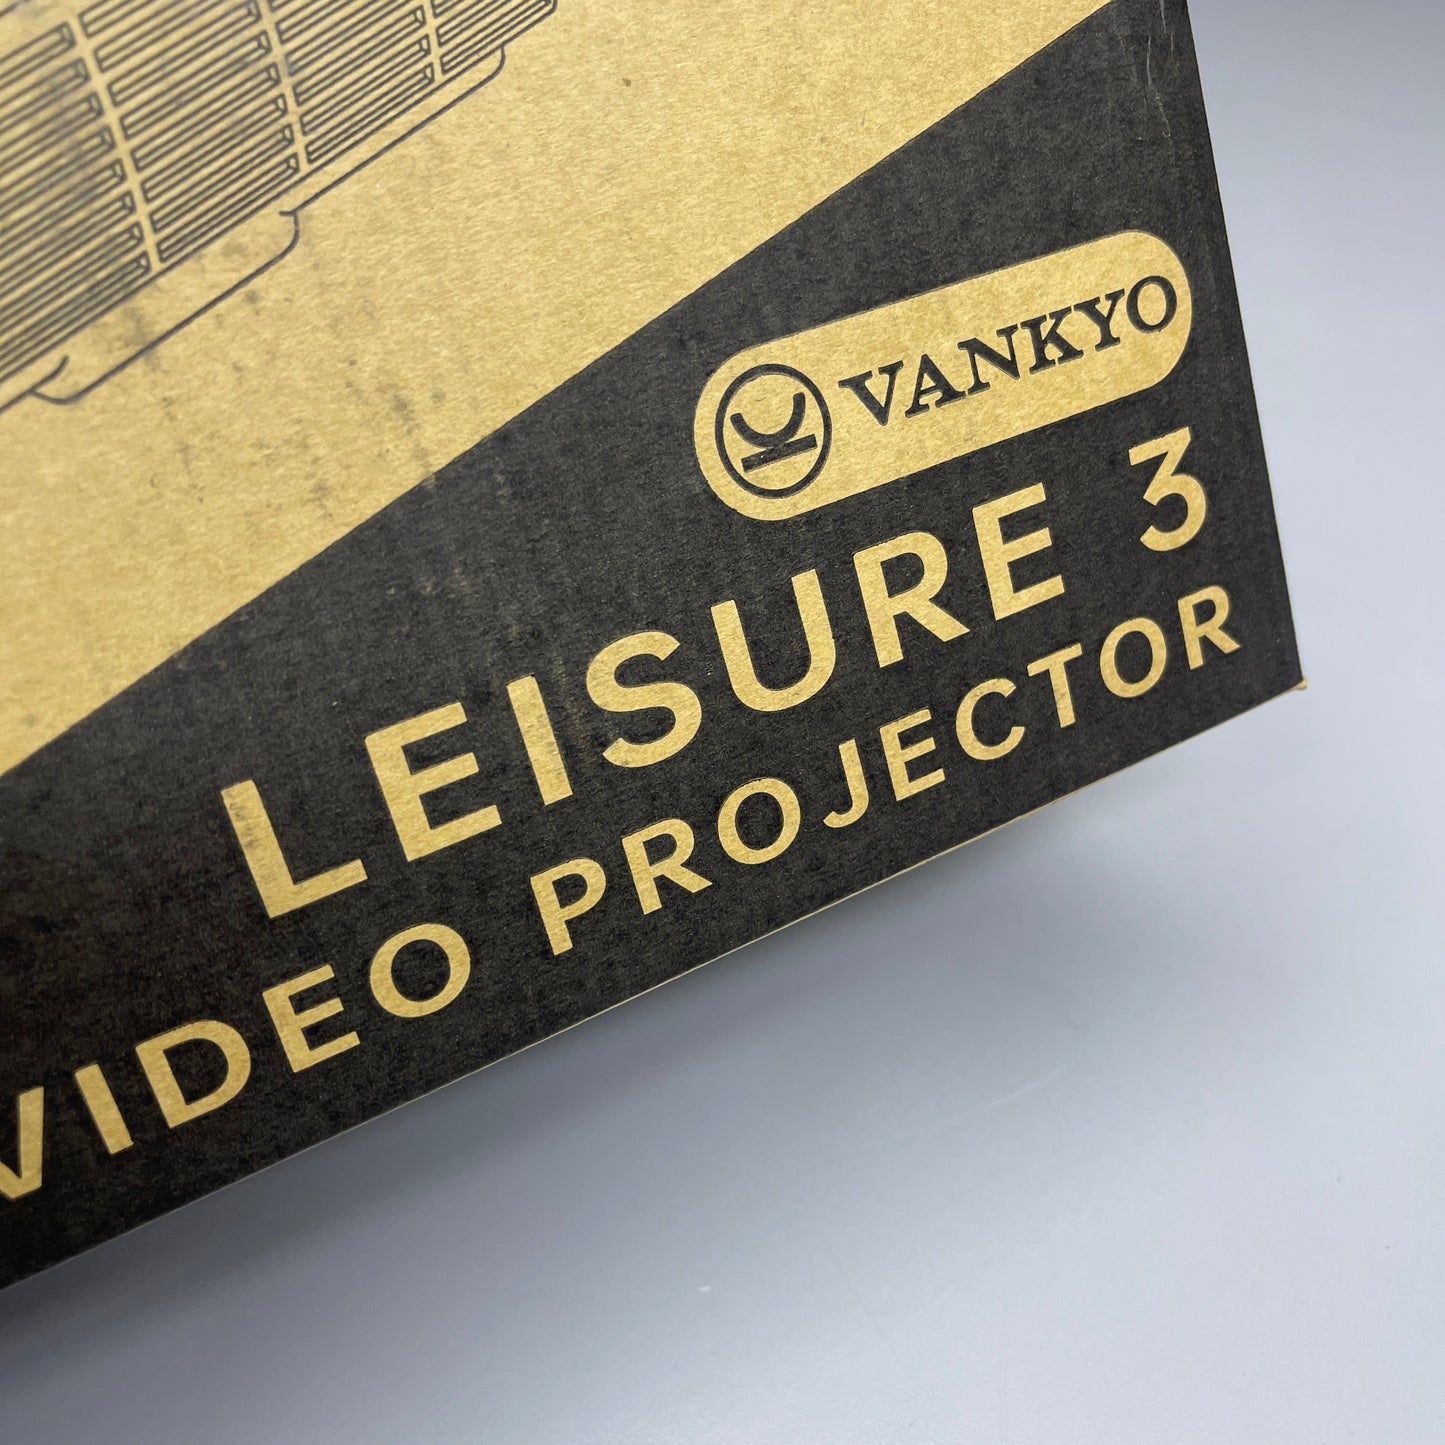 ZA@ VANKYO Leisure 3 Video Projector 480p HDMI/USB 8"W x 6.25"L White